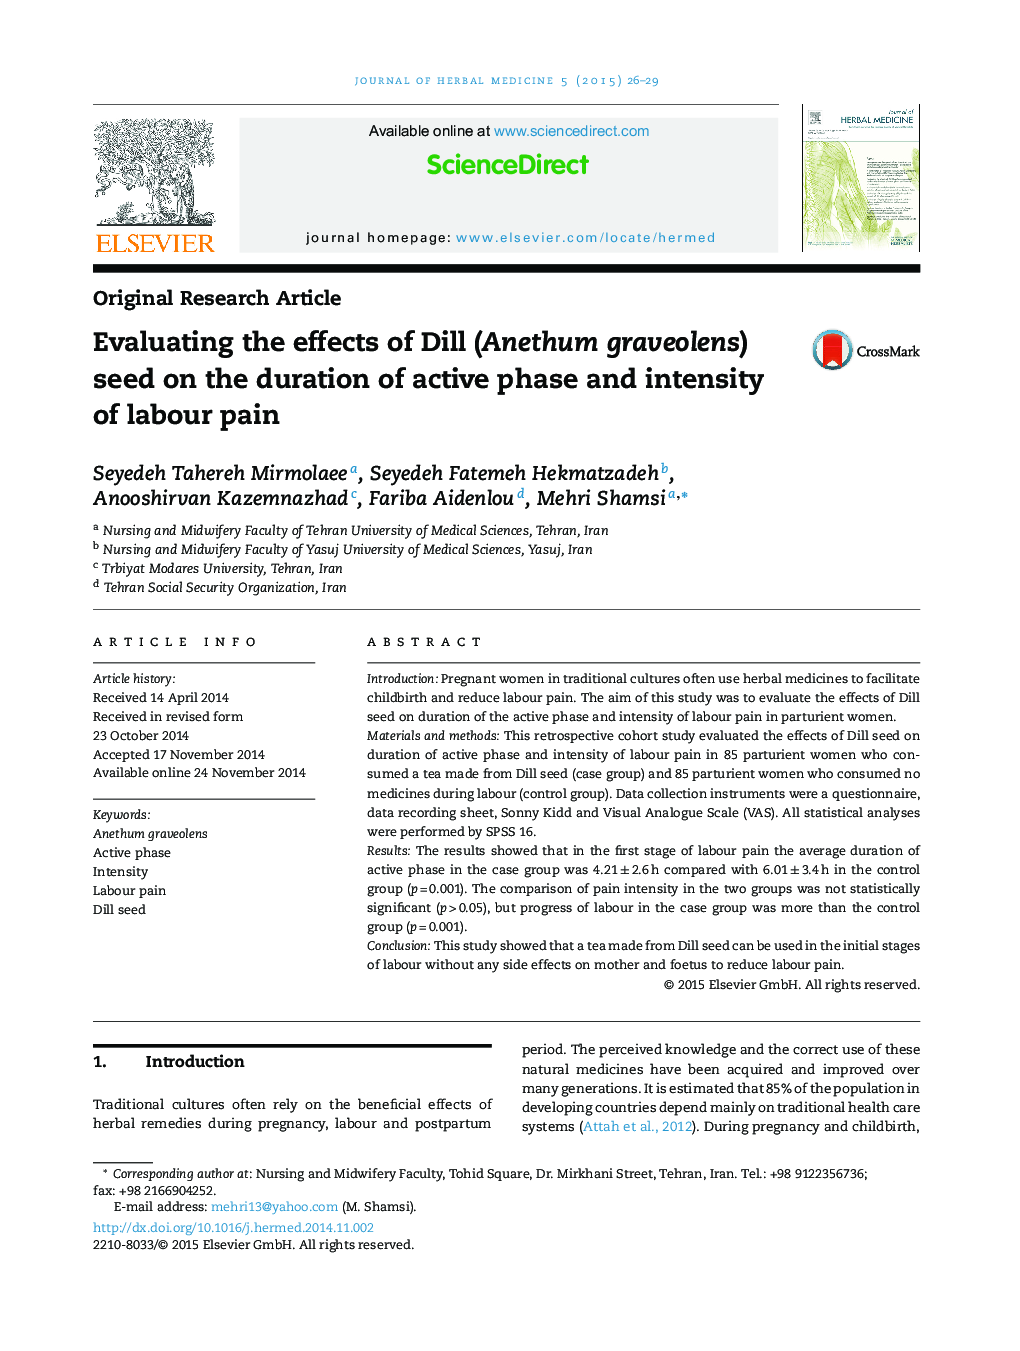 بررسی اثر دانه Dill (Anethum graveolens) بر طول دوره فعال و شدت درد زایمان